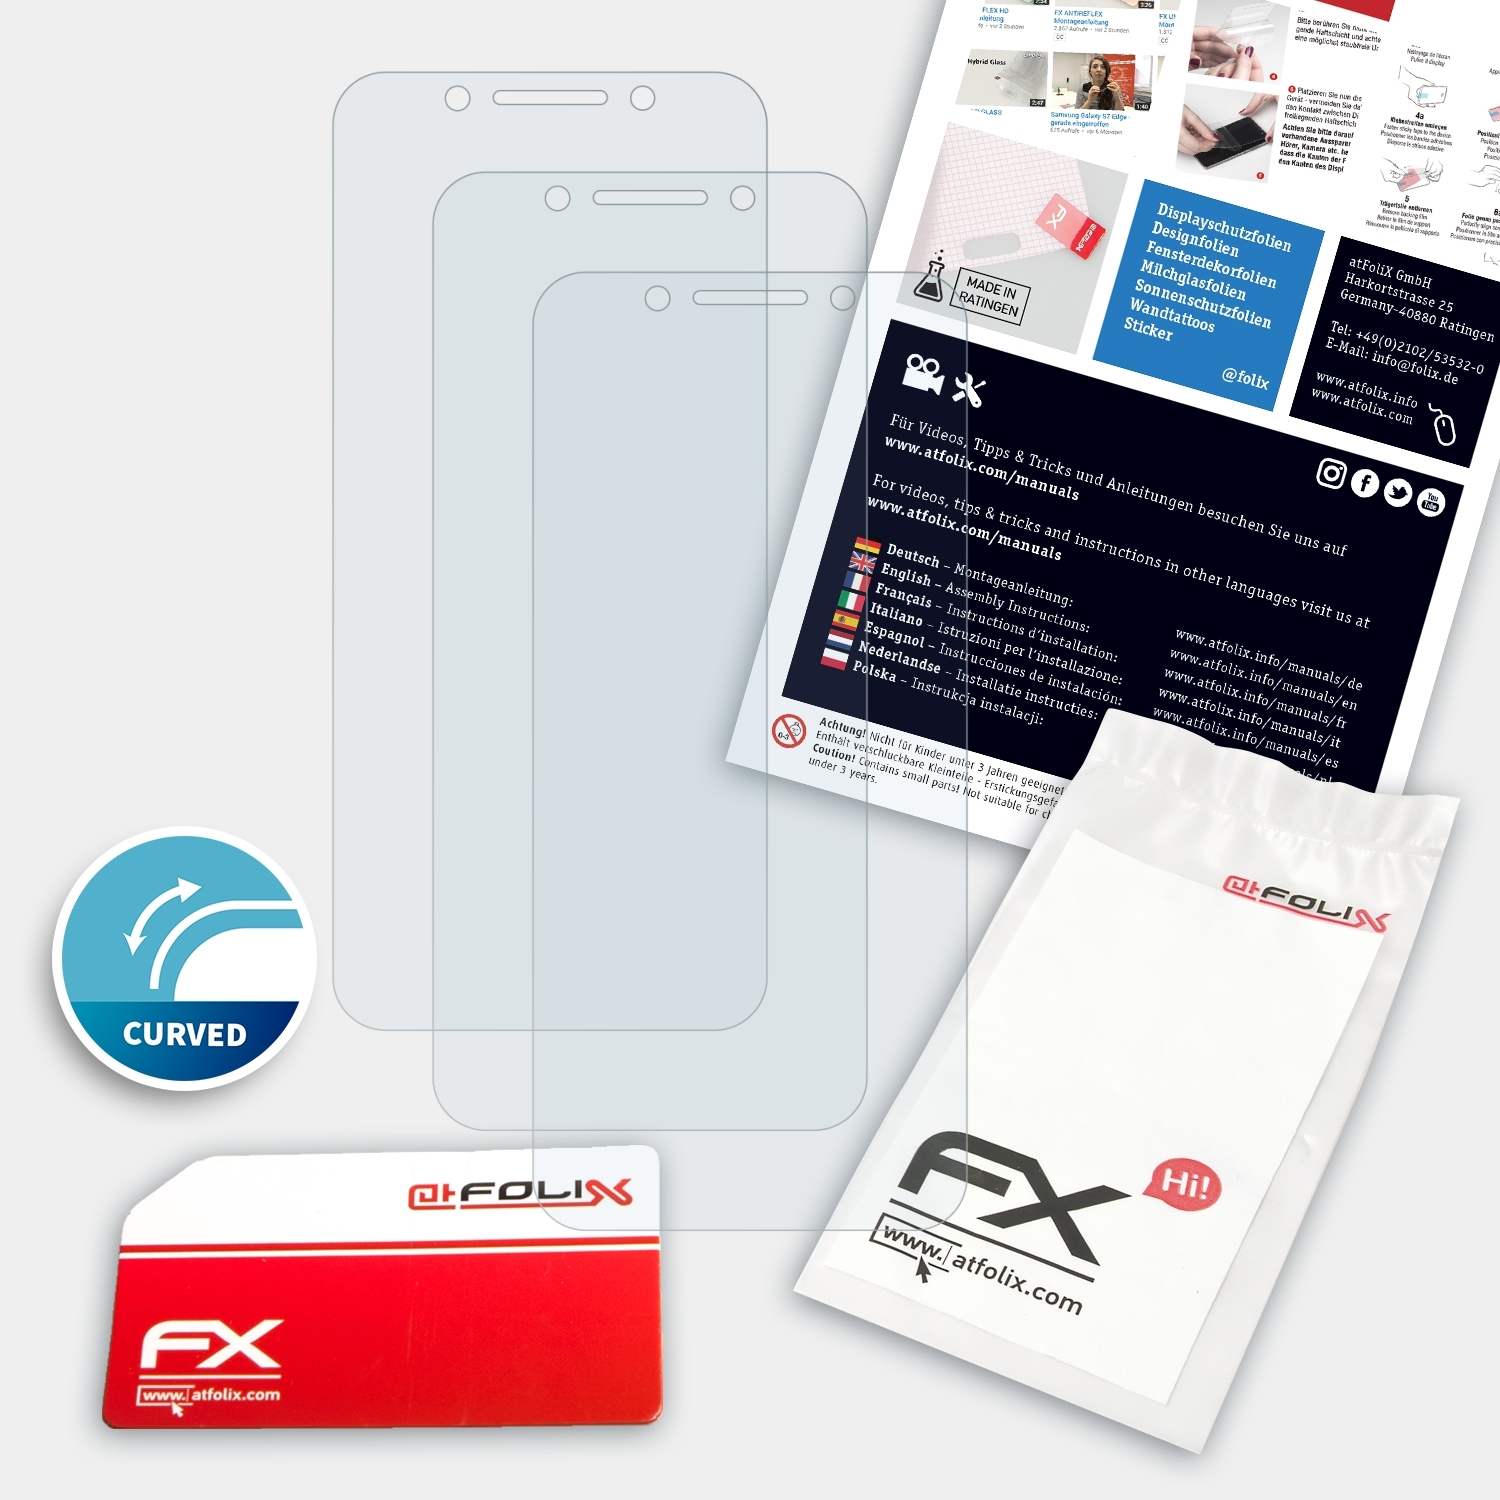 lite) Smart Displayschutz(für ATFOLIX 3x Vodafone FX-ActiFleX N9